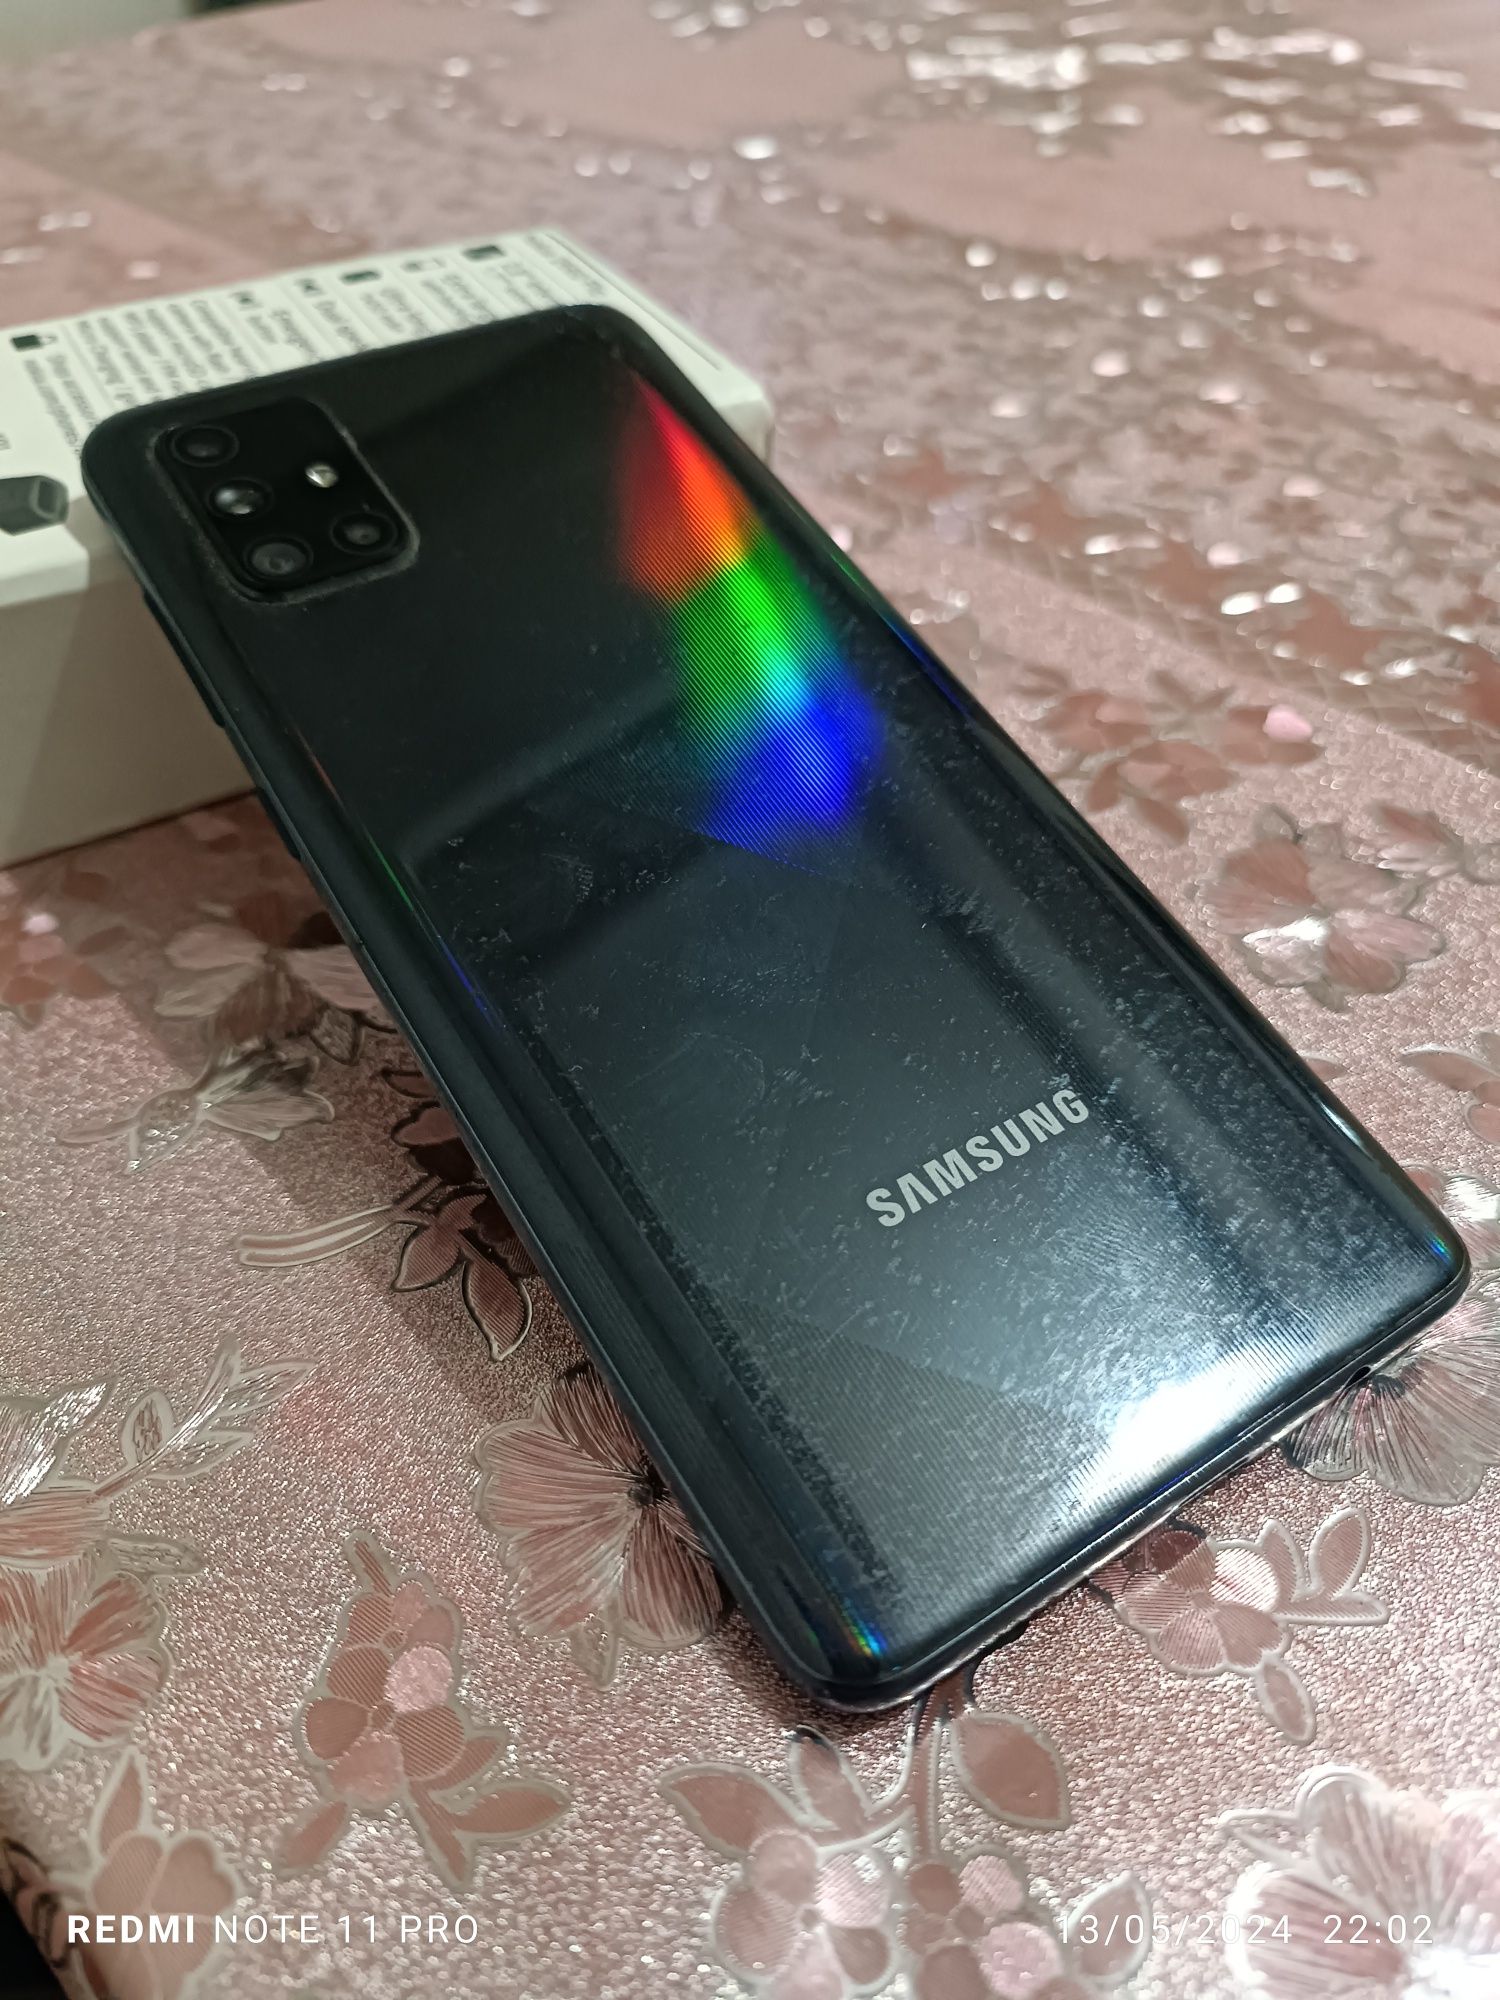 Samsung galaxy a71 sotiladi